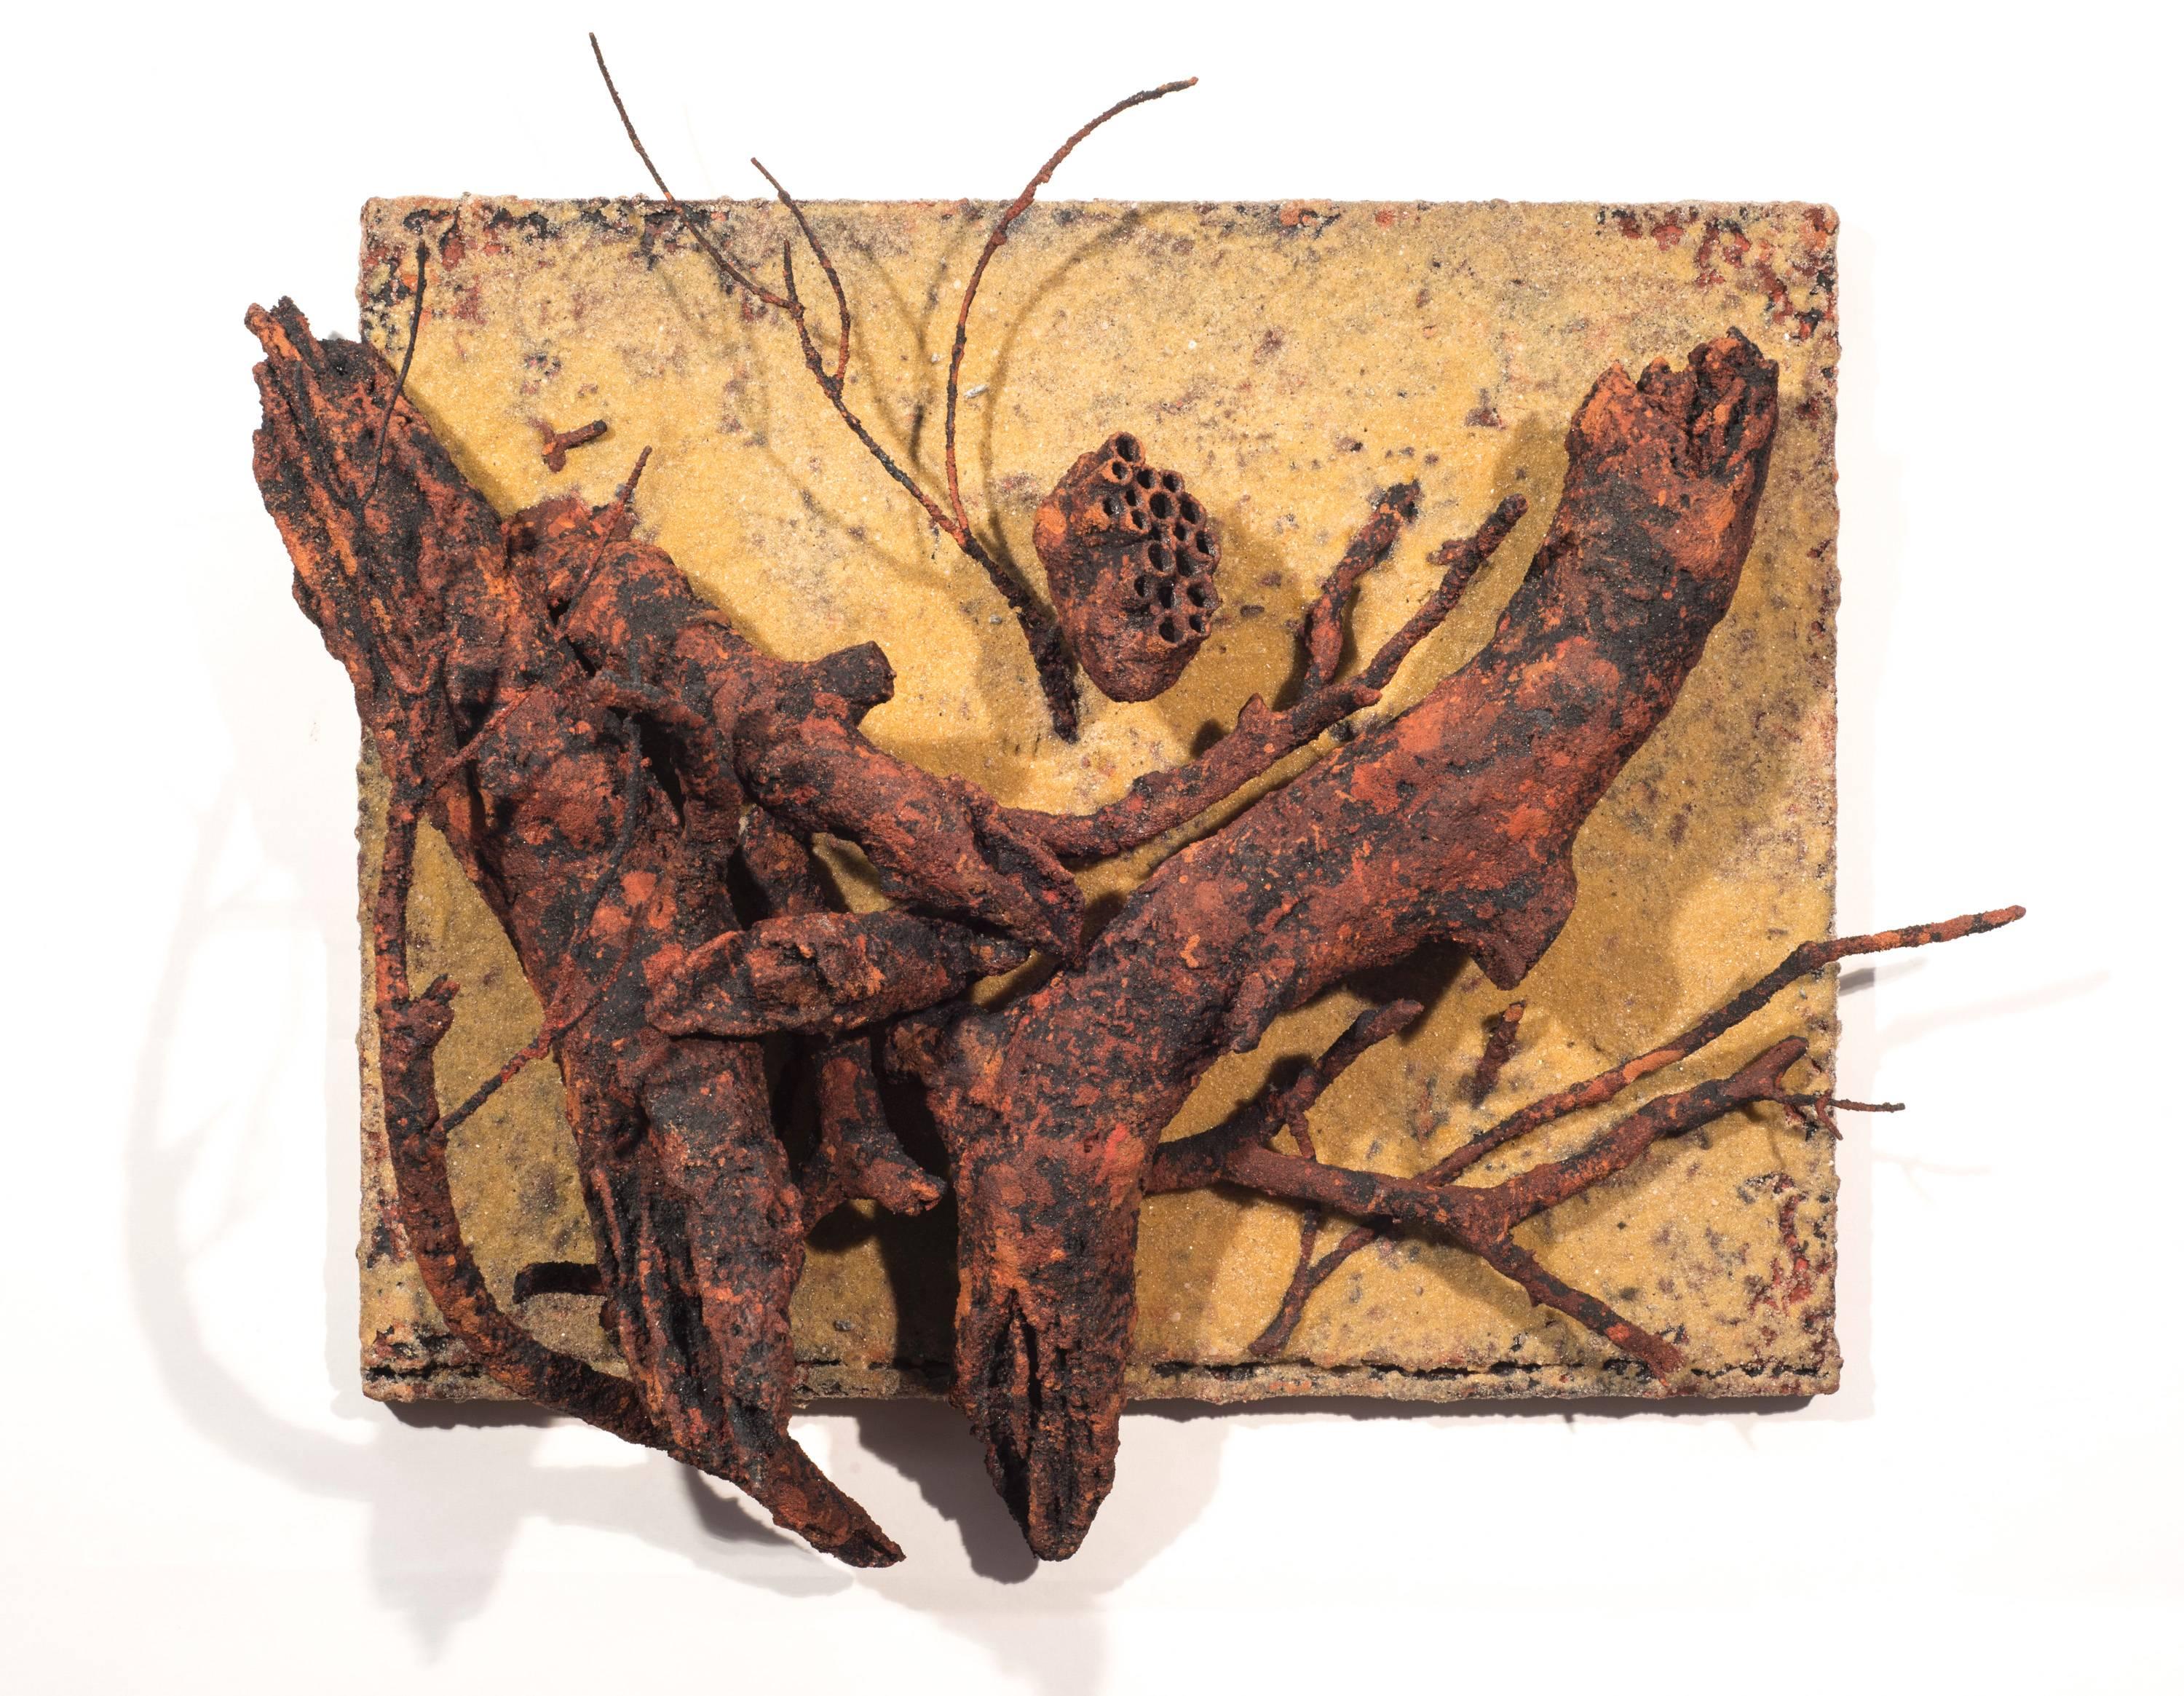 Joe Walters Still-Life Sculpture - Still Life with Wasp's Nest